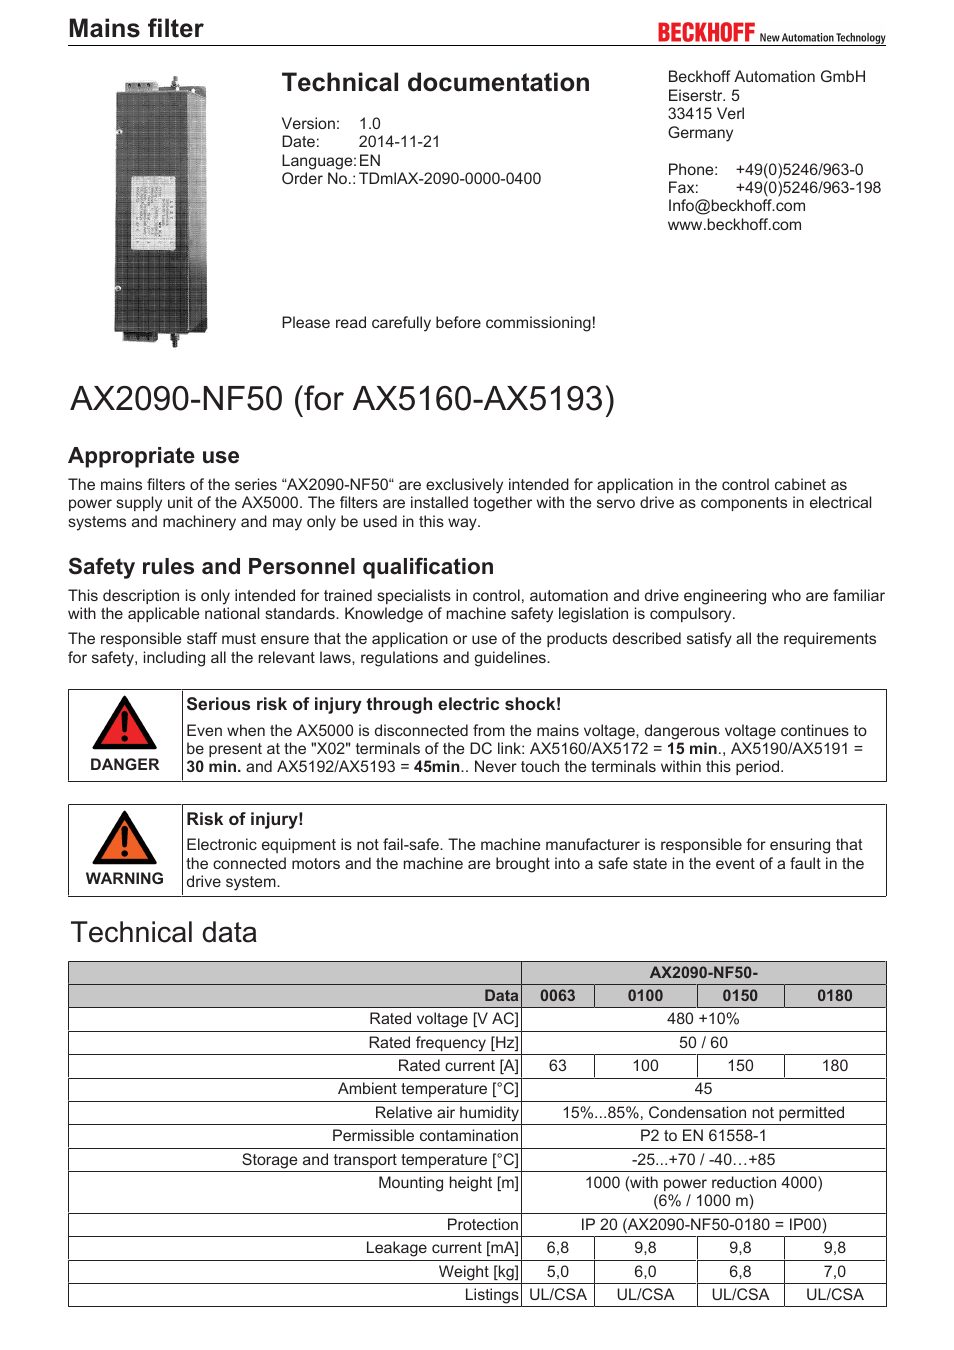 AX2090-NF50